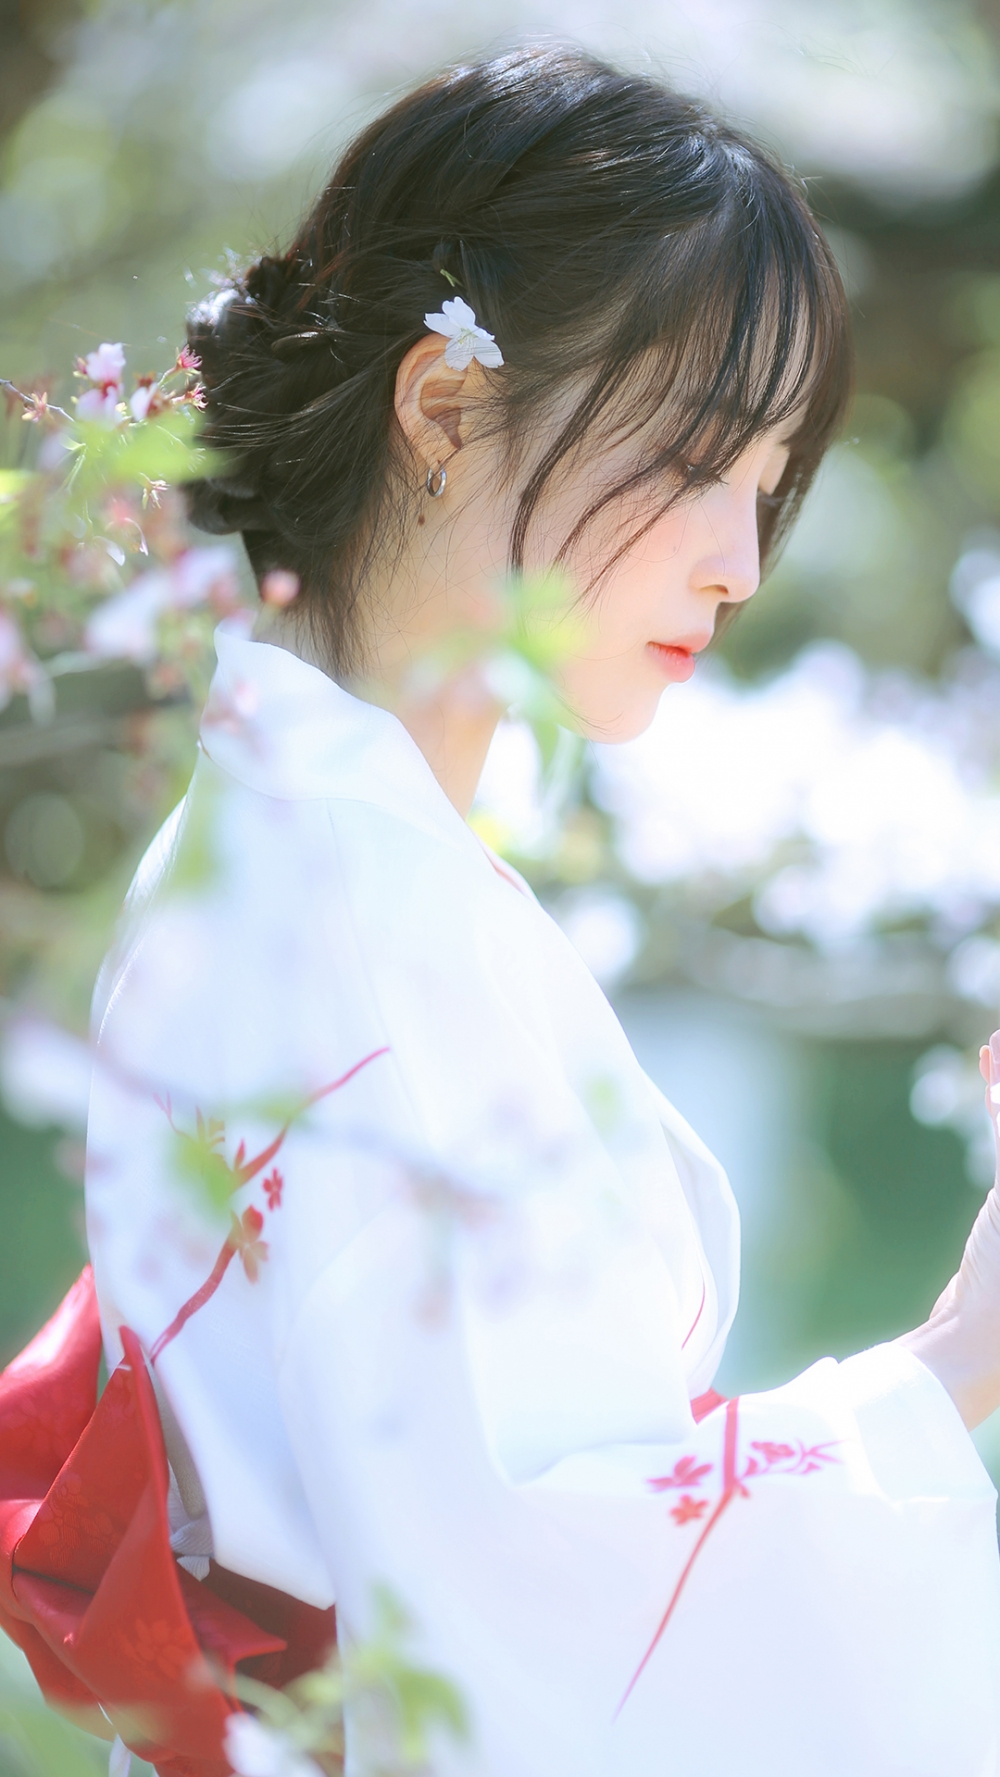 日式和服美女肤白貌美樱花树下清新唯美写真